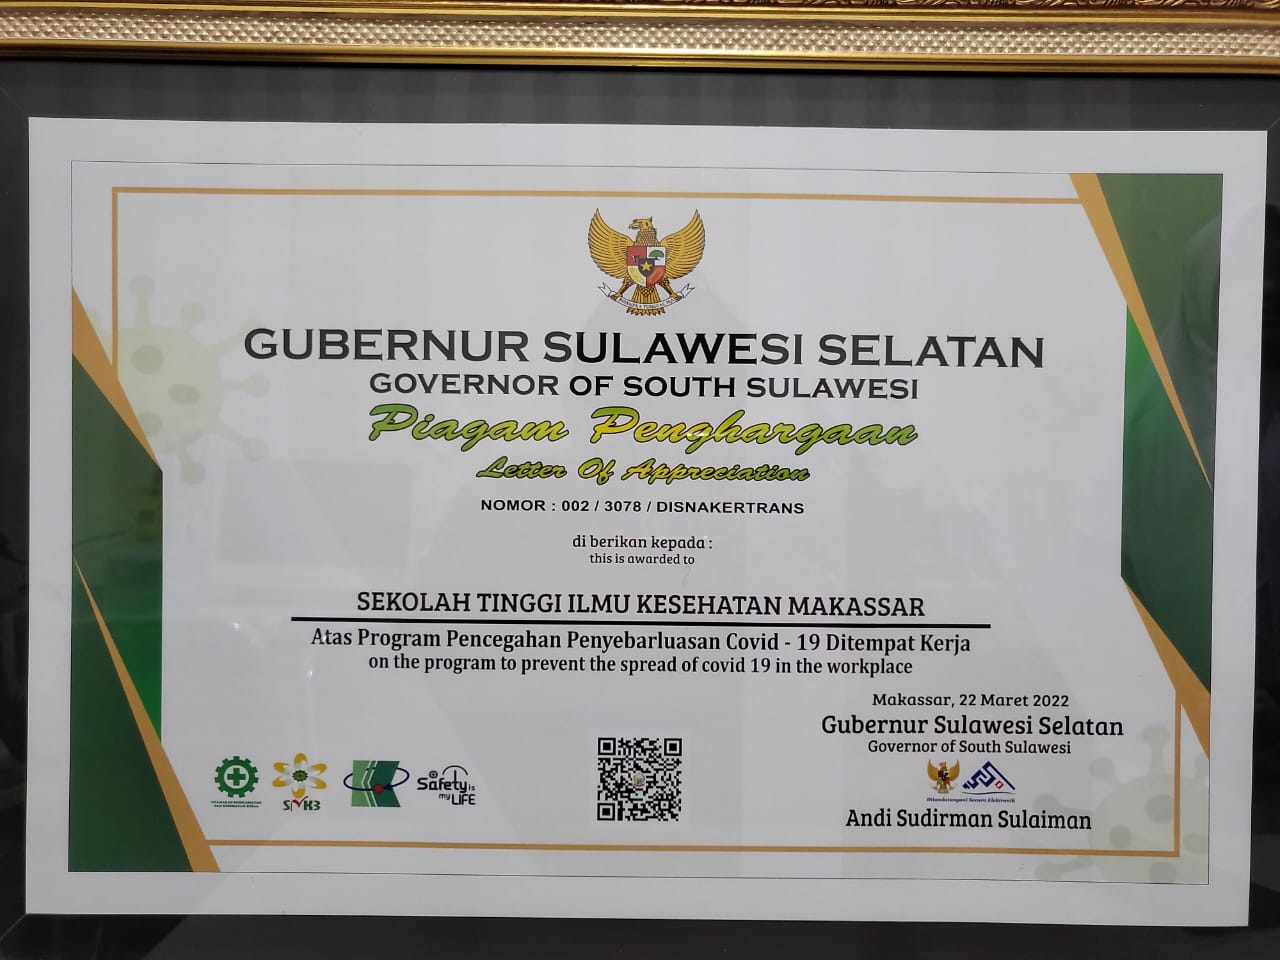 Ketua Sekolah Tinggi Ilmu Kesehatan (STIK) Makassar, Esse Puji Pawenrusi SKM M.Kes menerima penghargaan dari Pemerintah Provinsi Sulawesi Selatan